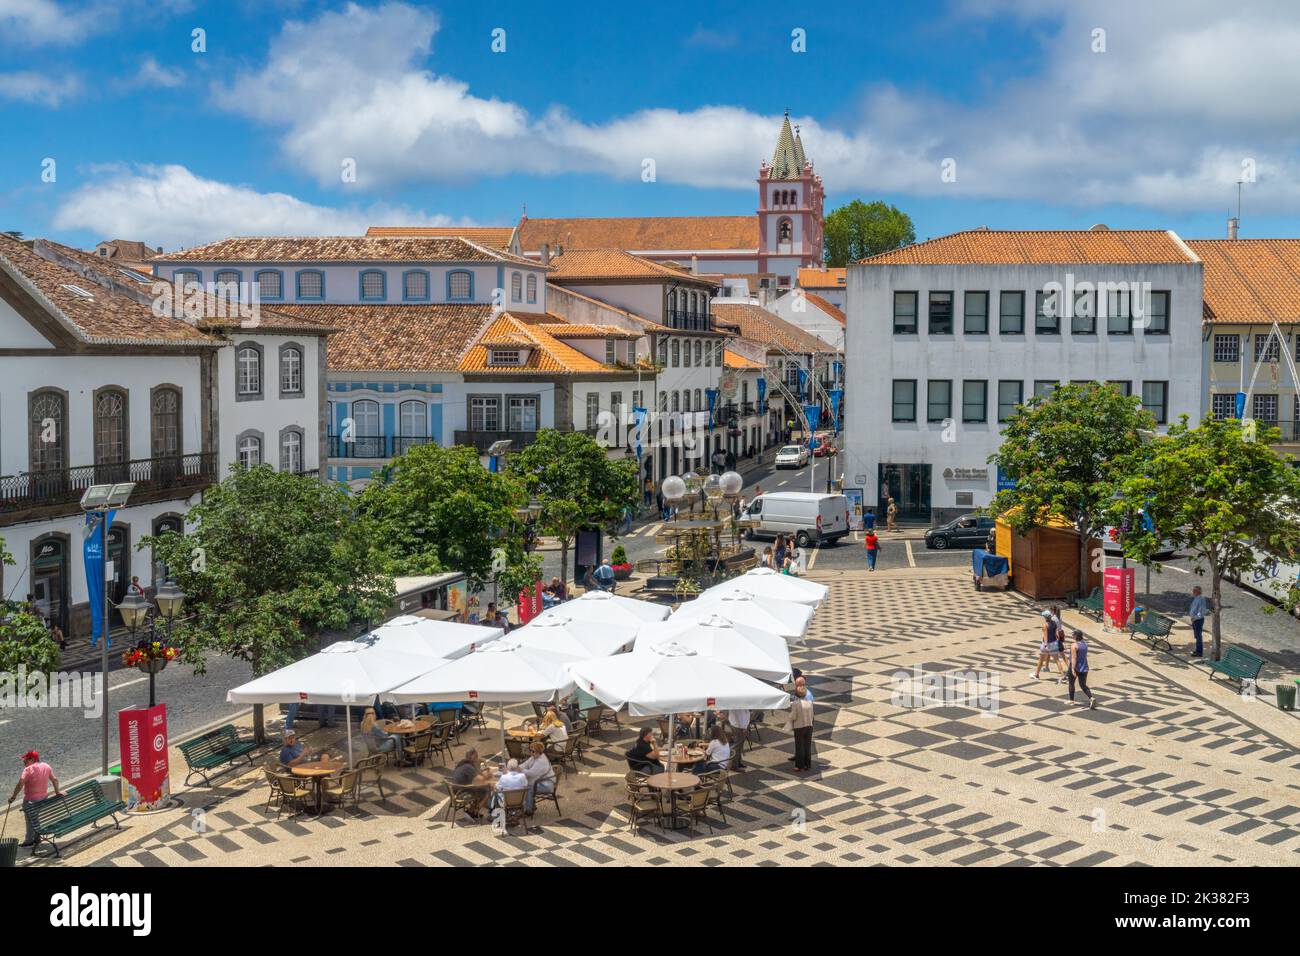 La place centrale connue sous le nom de Praca Velha avec des cafés en plein air dans le centre historique de la ville d'Angra do Heroismo, l'île de Terceira, les Açores, le Portugal. Banque D'Images